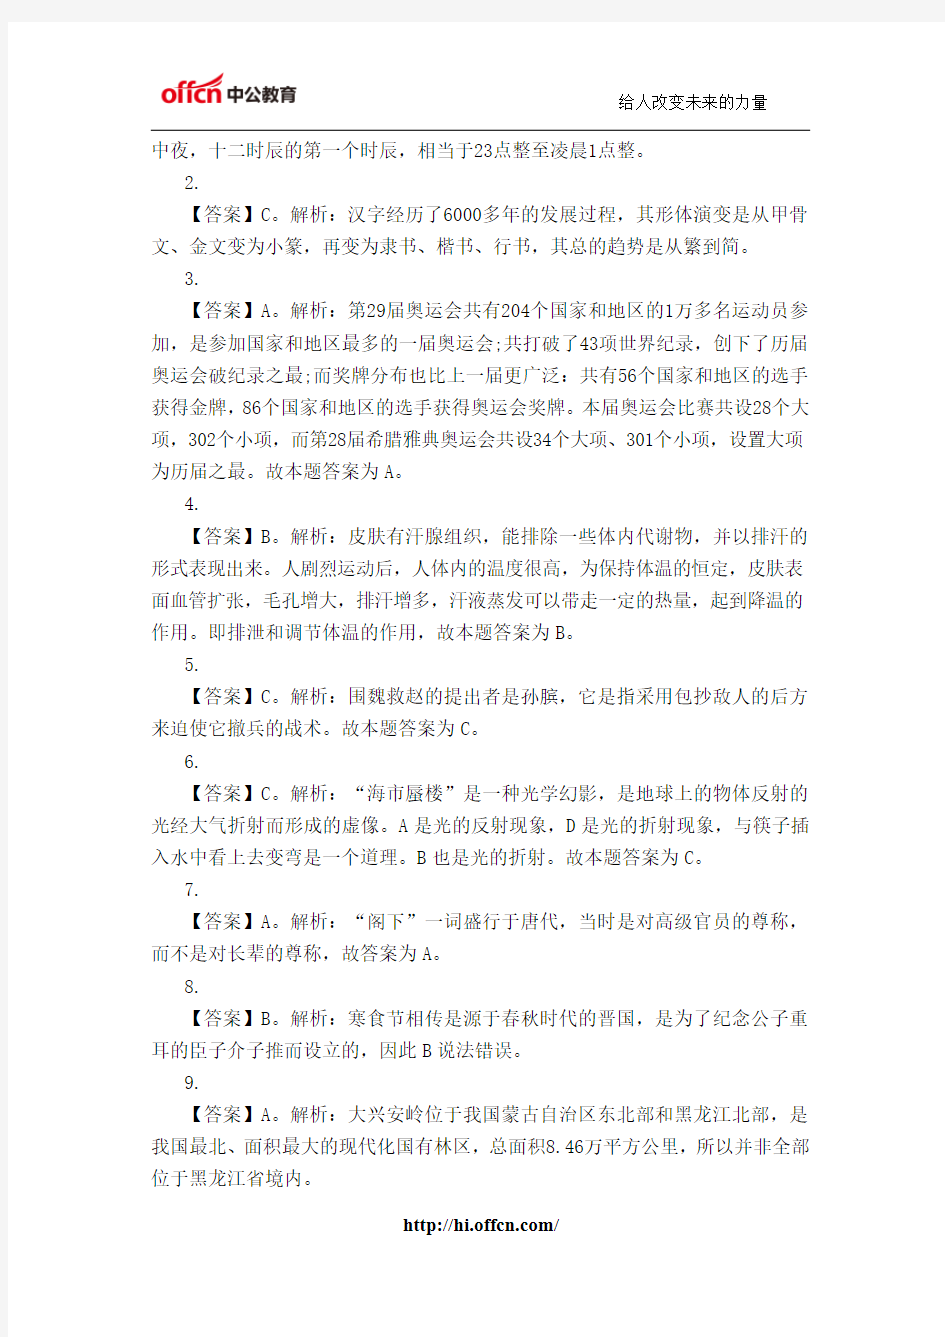 2014海南省考备战每日一练——3月17日行测练习(答案)